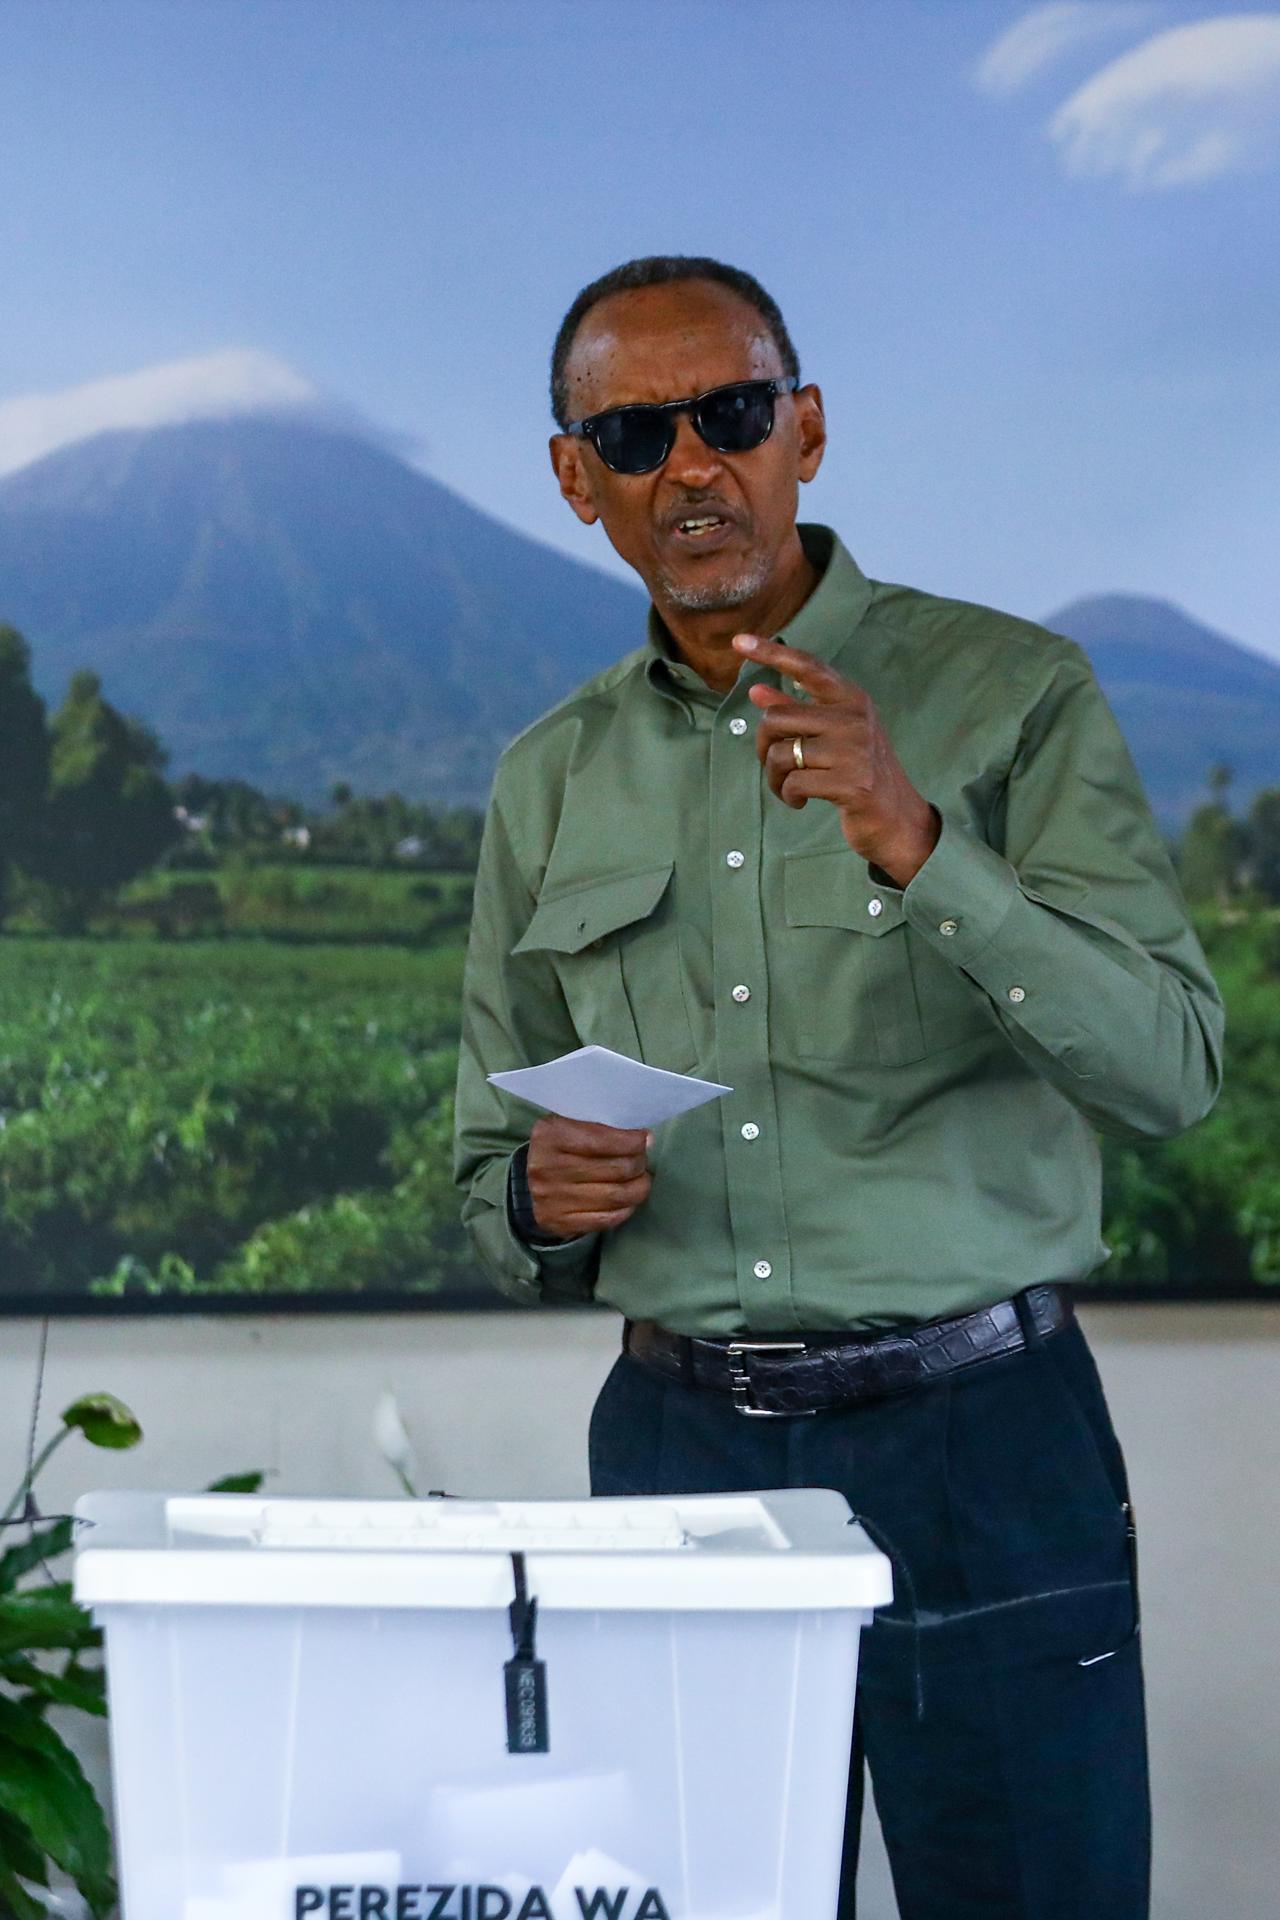 El presidente de Ruanda, Paul Kagame, emite su voto en la Escuela Secundaria Técnica SOS de Kigali, Ruanda, el 15 de julio de 2024. El presidente en ejercicio de Ruanda, Paul Kagame, busca un cuarto mandato, ya que 9,7 millones de ciudadanos ruandeses tienen derecho a votar para elegir un presidente y miembros del parlamento que ejercerán sus funciones durante los próximos cinco años. (Elecciones, Ruanda) EFE/EPA/DANIEL IRUNGU